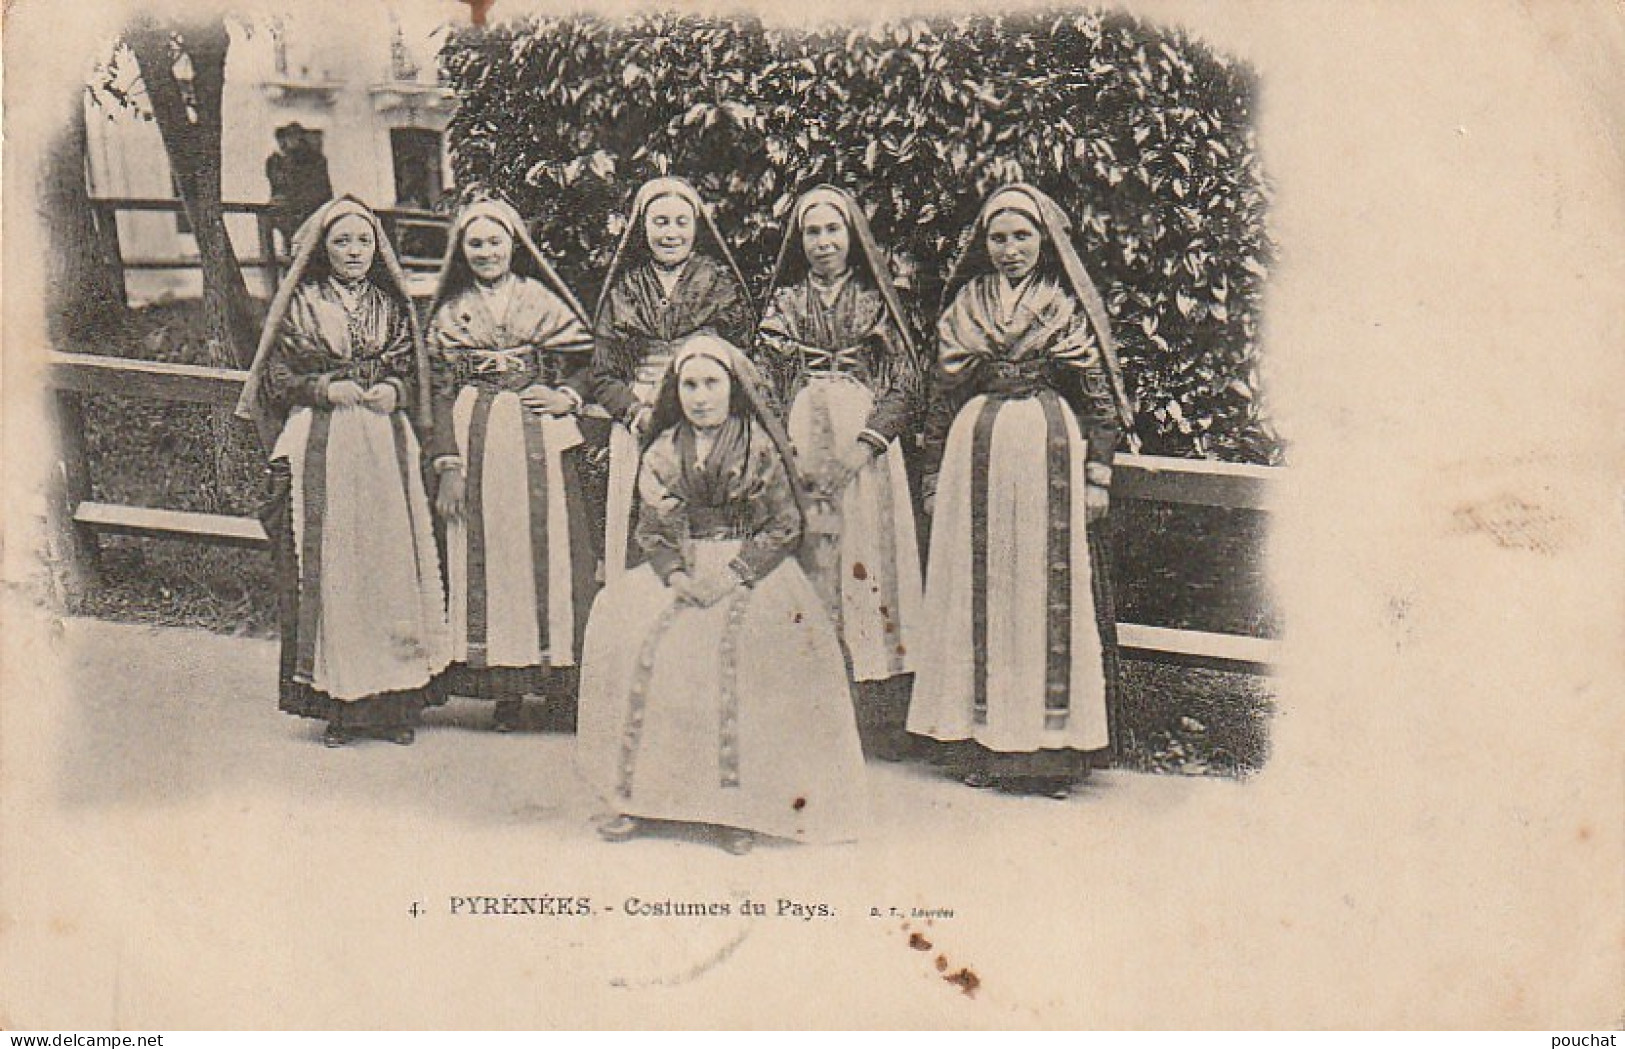 GU Nw - PYRENEES  -  COSTUMES DU PAYS - JEUNES FEMMES EN COSTUME TRADITIONNEL AVEC CAPULET - 2 SCANS - Costumes